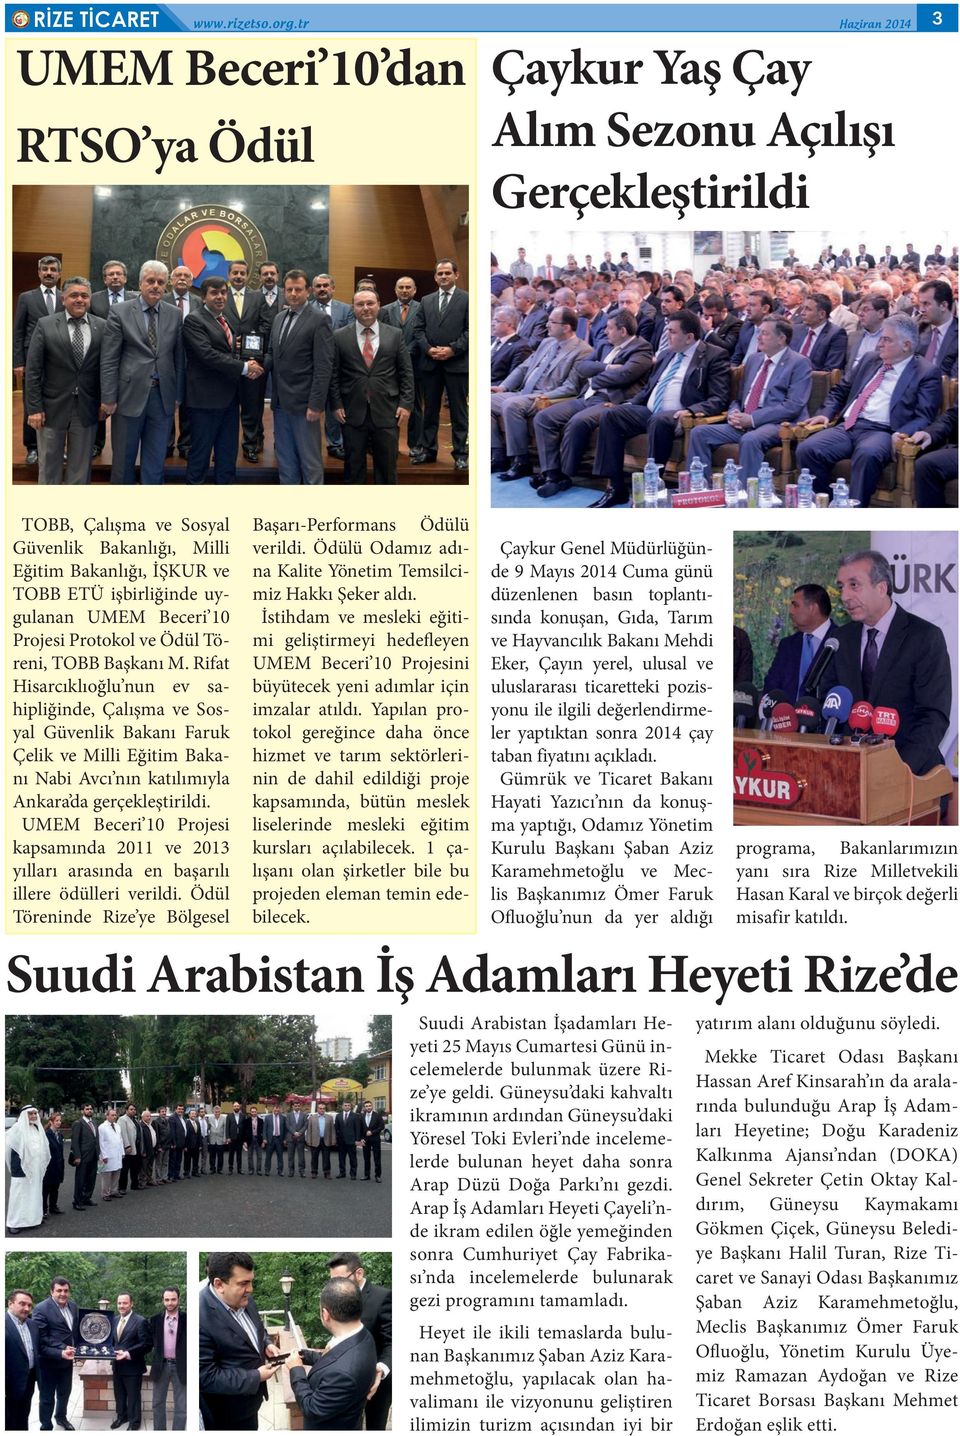 Rifat Hisarcıklıoğlu nun ev sahipliğinde, Çalışma ve Sosyal Güvenlik Bakanı Faruk Çelik ve Milli Eğitim Bakanı Nabi Avcı nın katılımıyla Ankara da gerçekleştirildi.